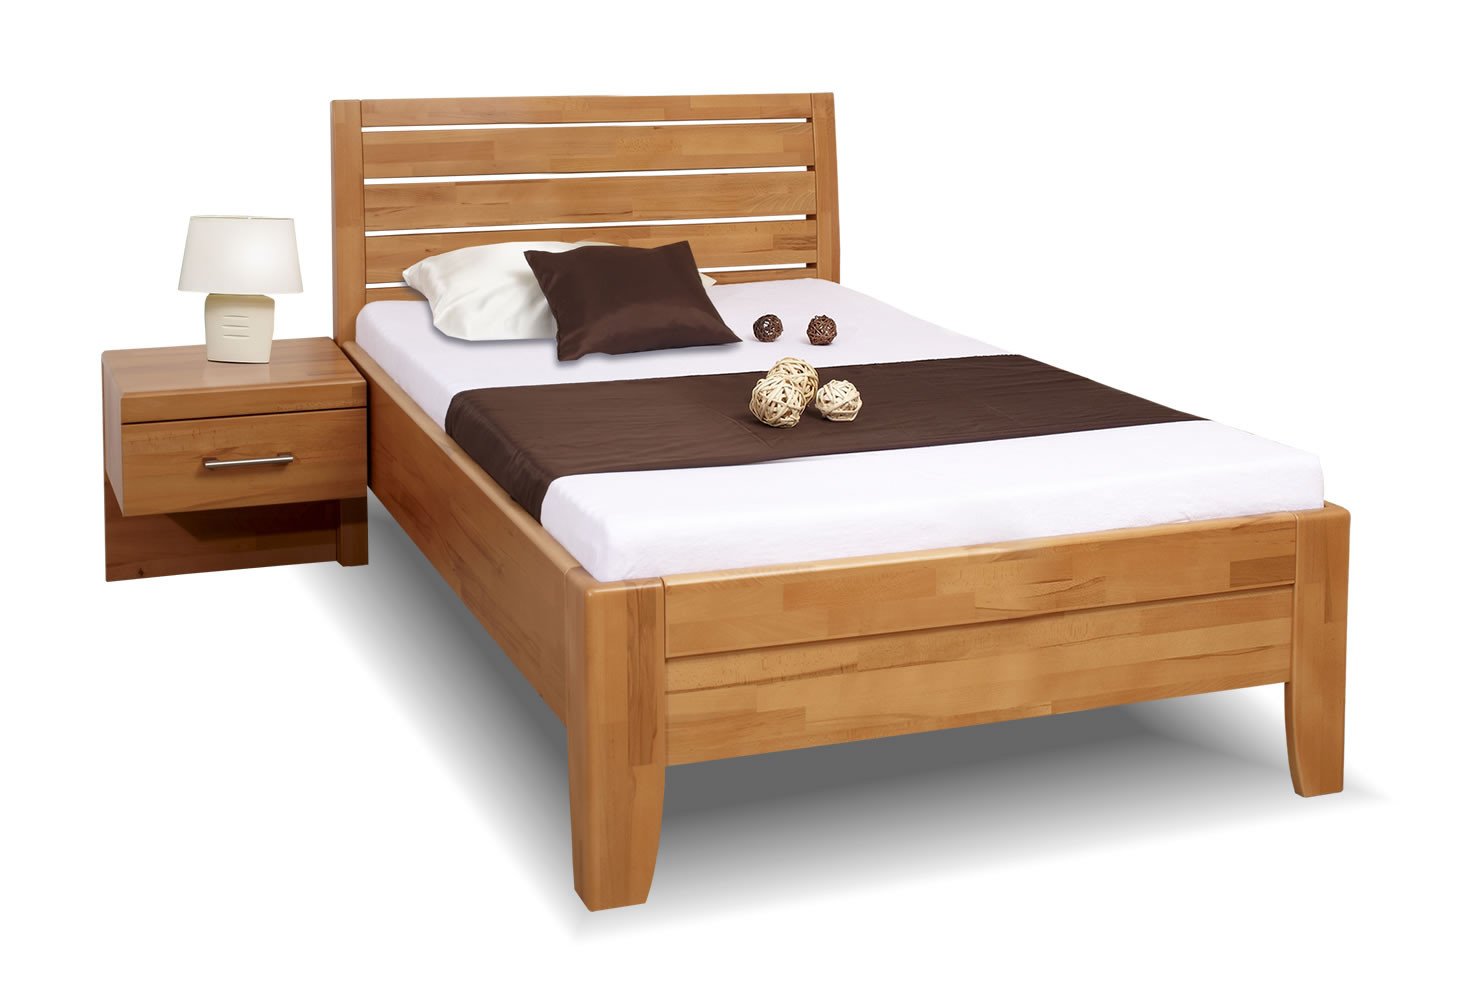 Zvýšená postel jednolůžko z masivu CONCEPTA 1, 120x200, masiv buk